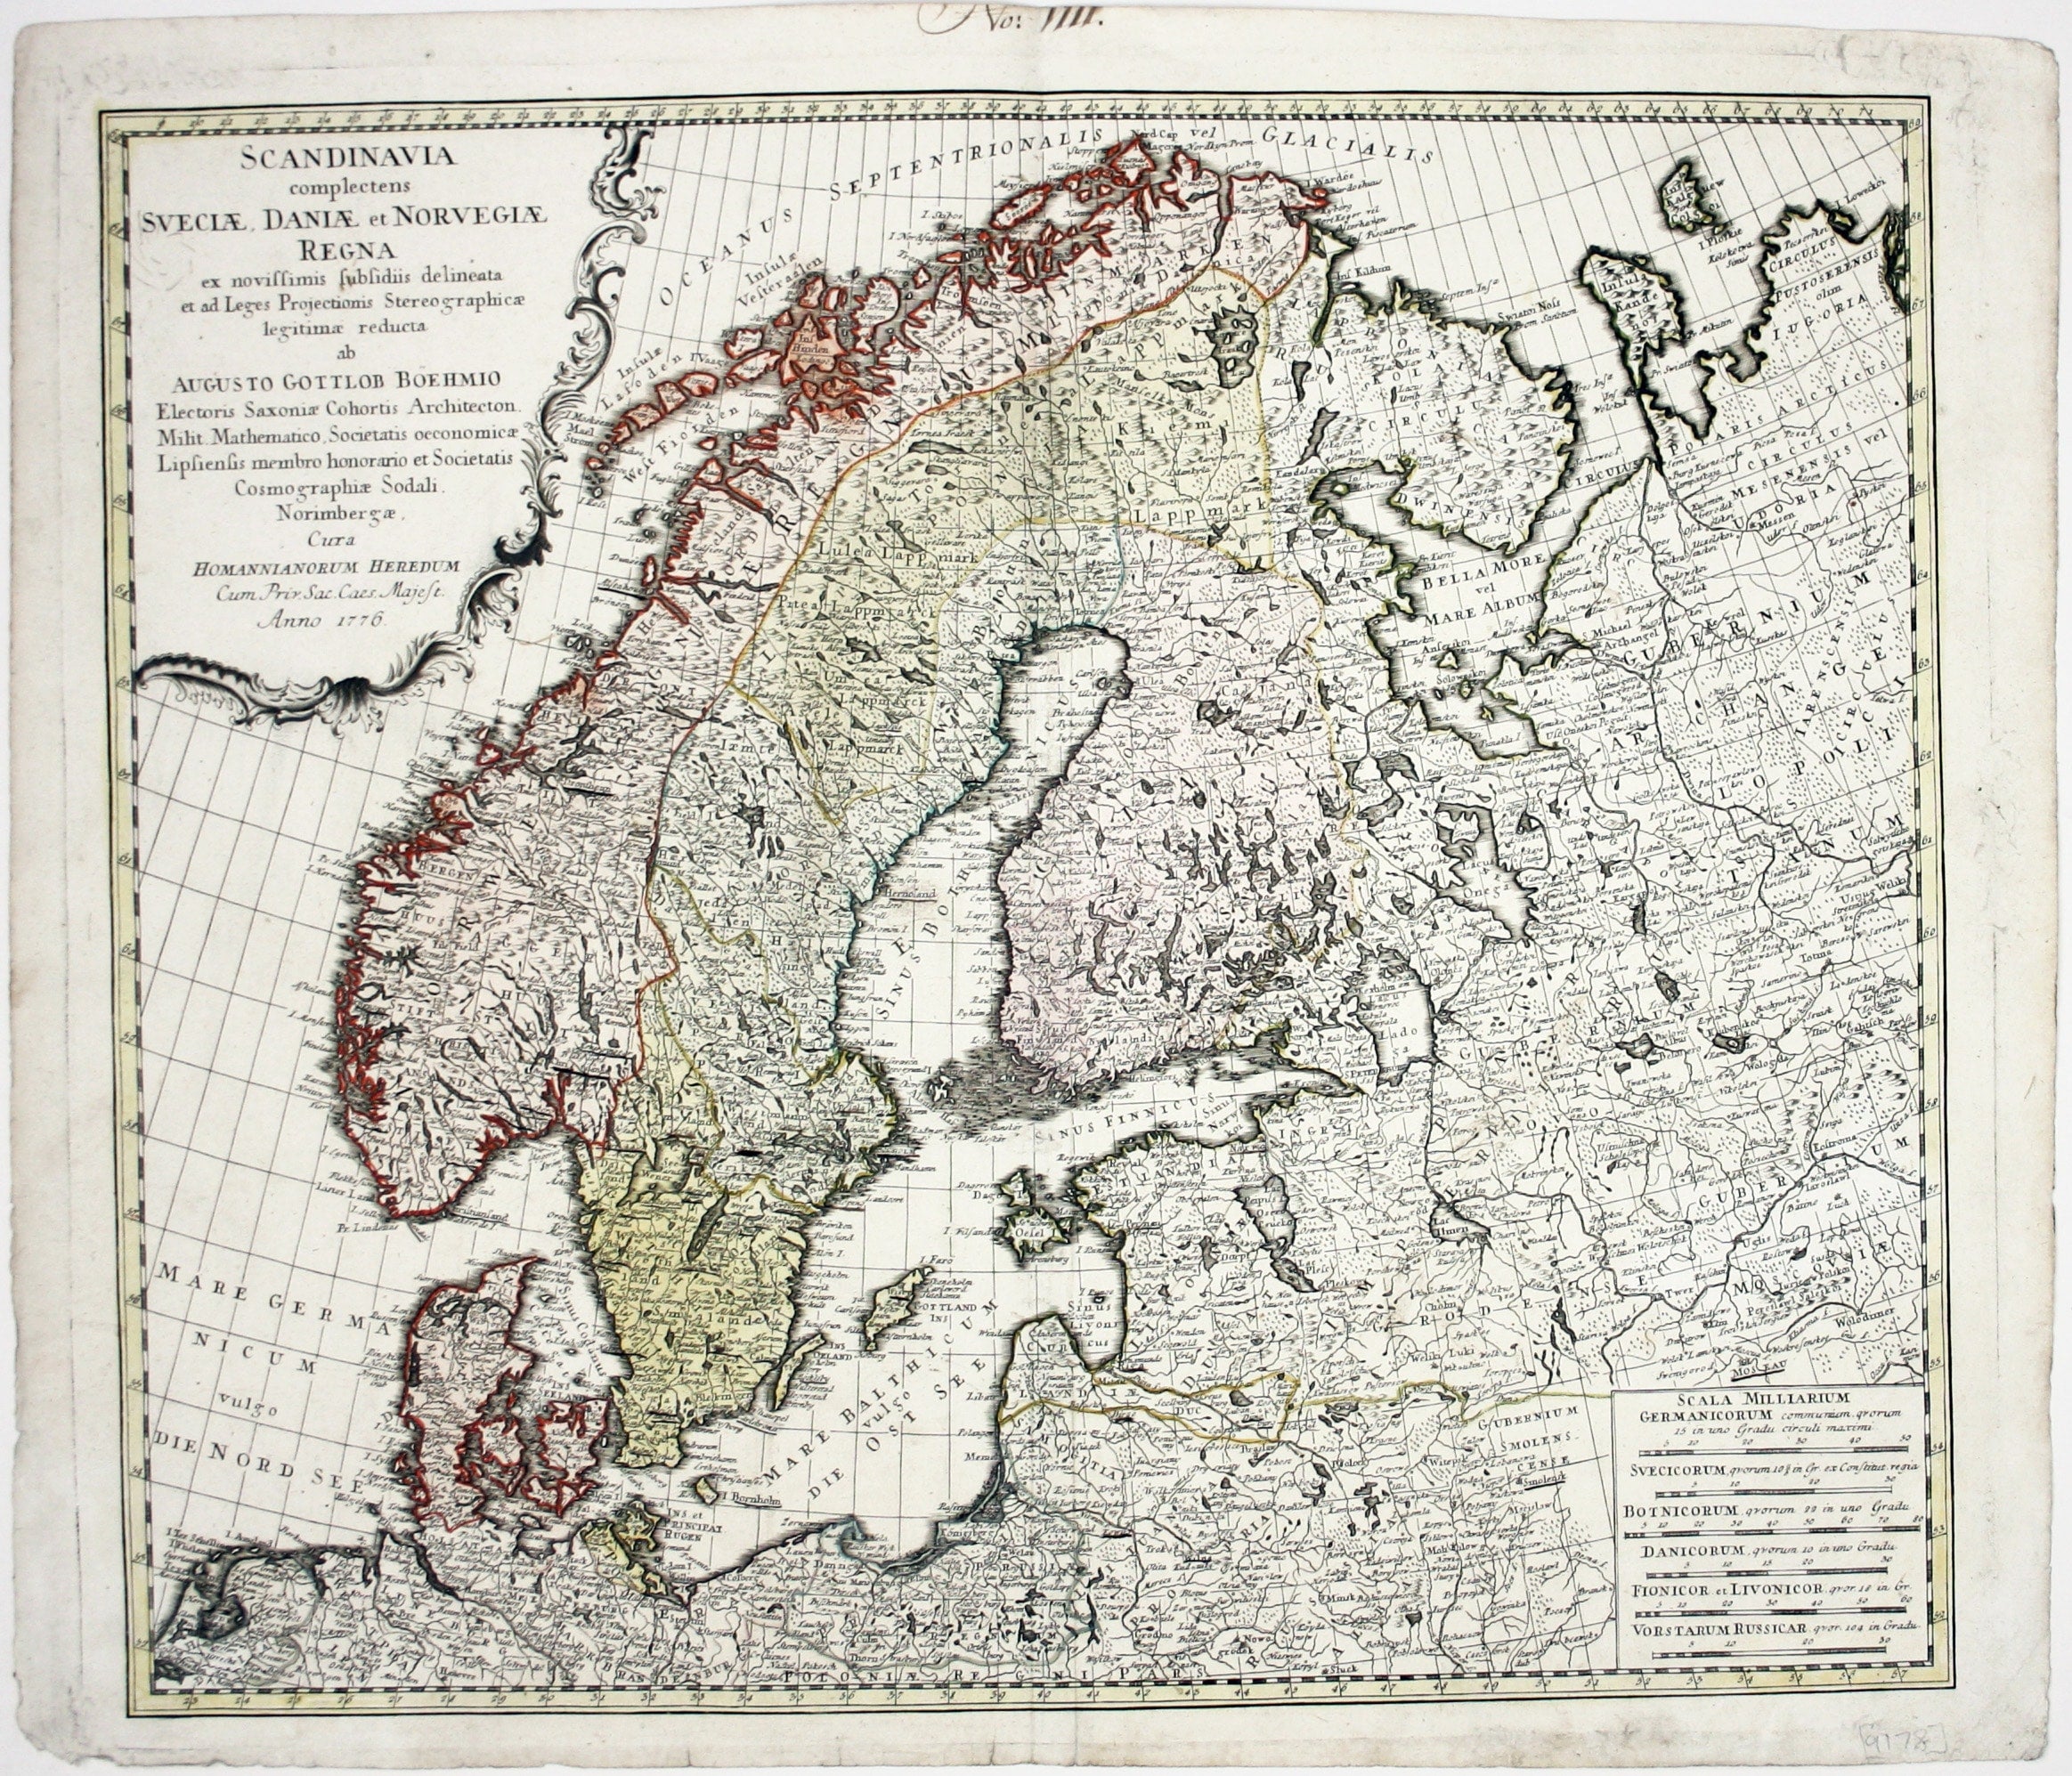 Homann Heirs' Map of Scandinavia